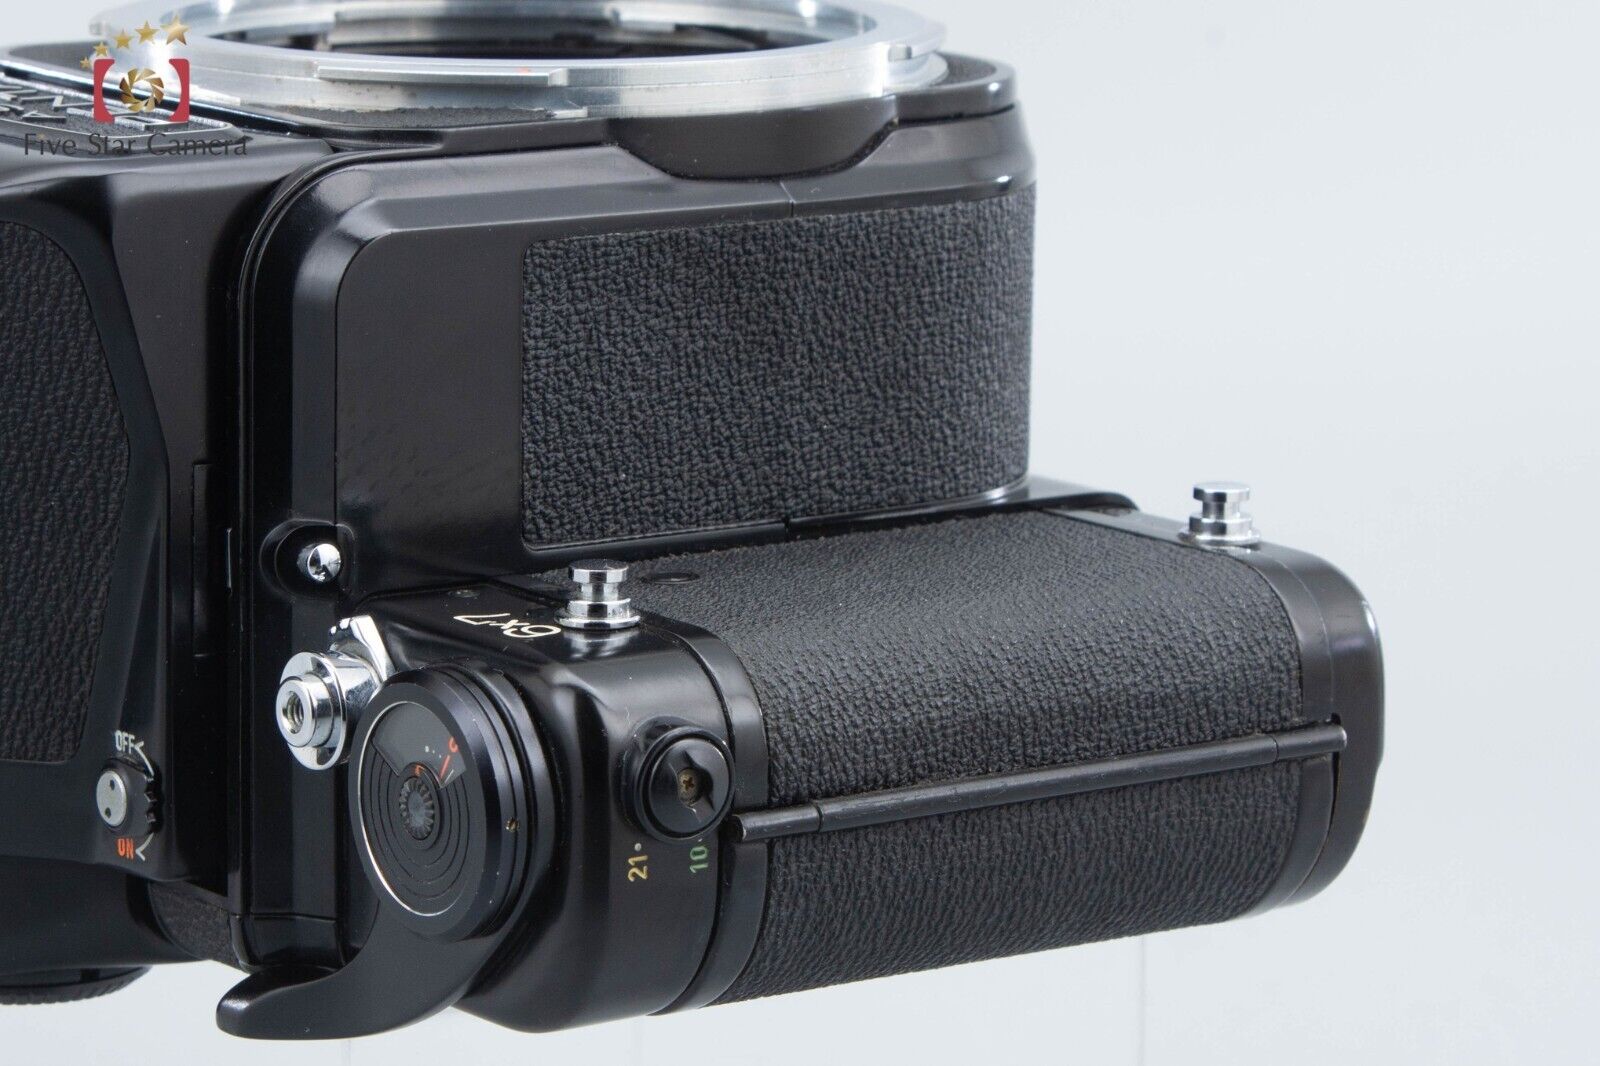 PENTAX 6x7 TTL Early Model Medium Format Film Camera